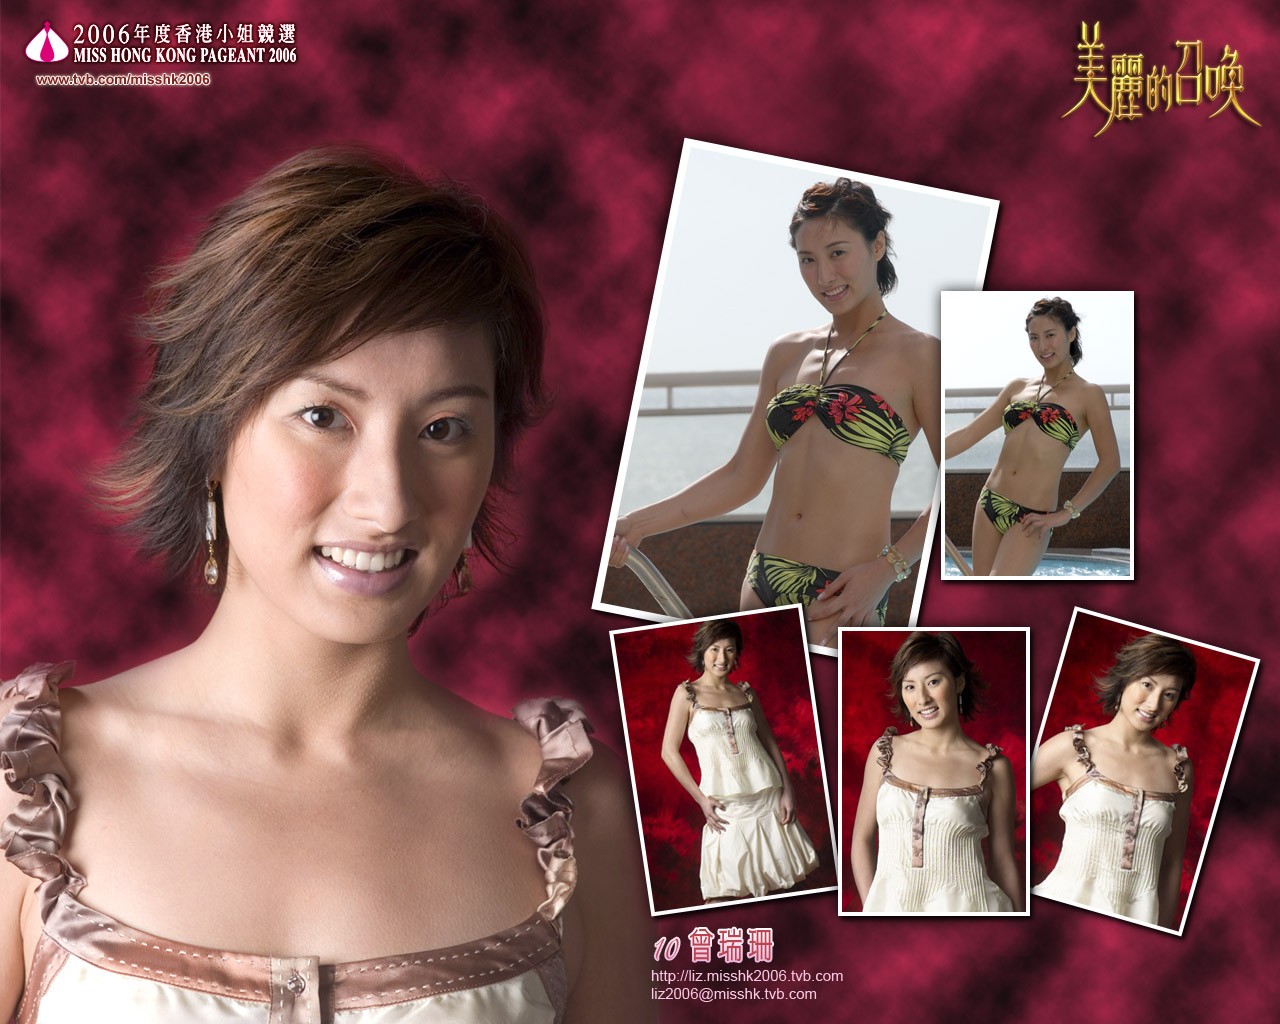 Miss Hong Kong 2006 Album #7 - 1280x1024